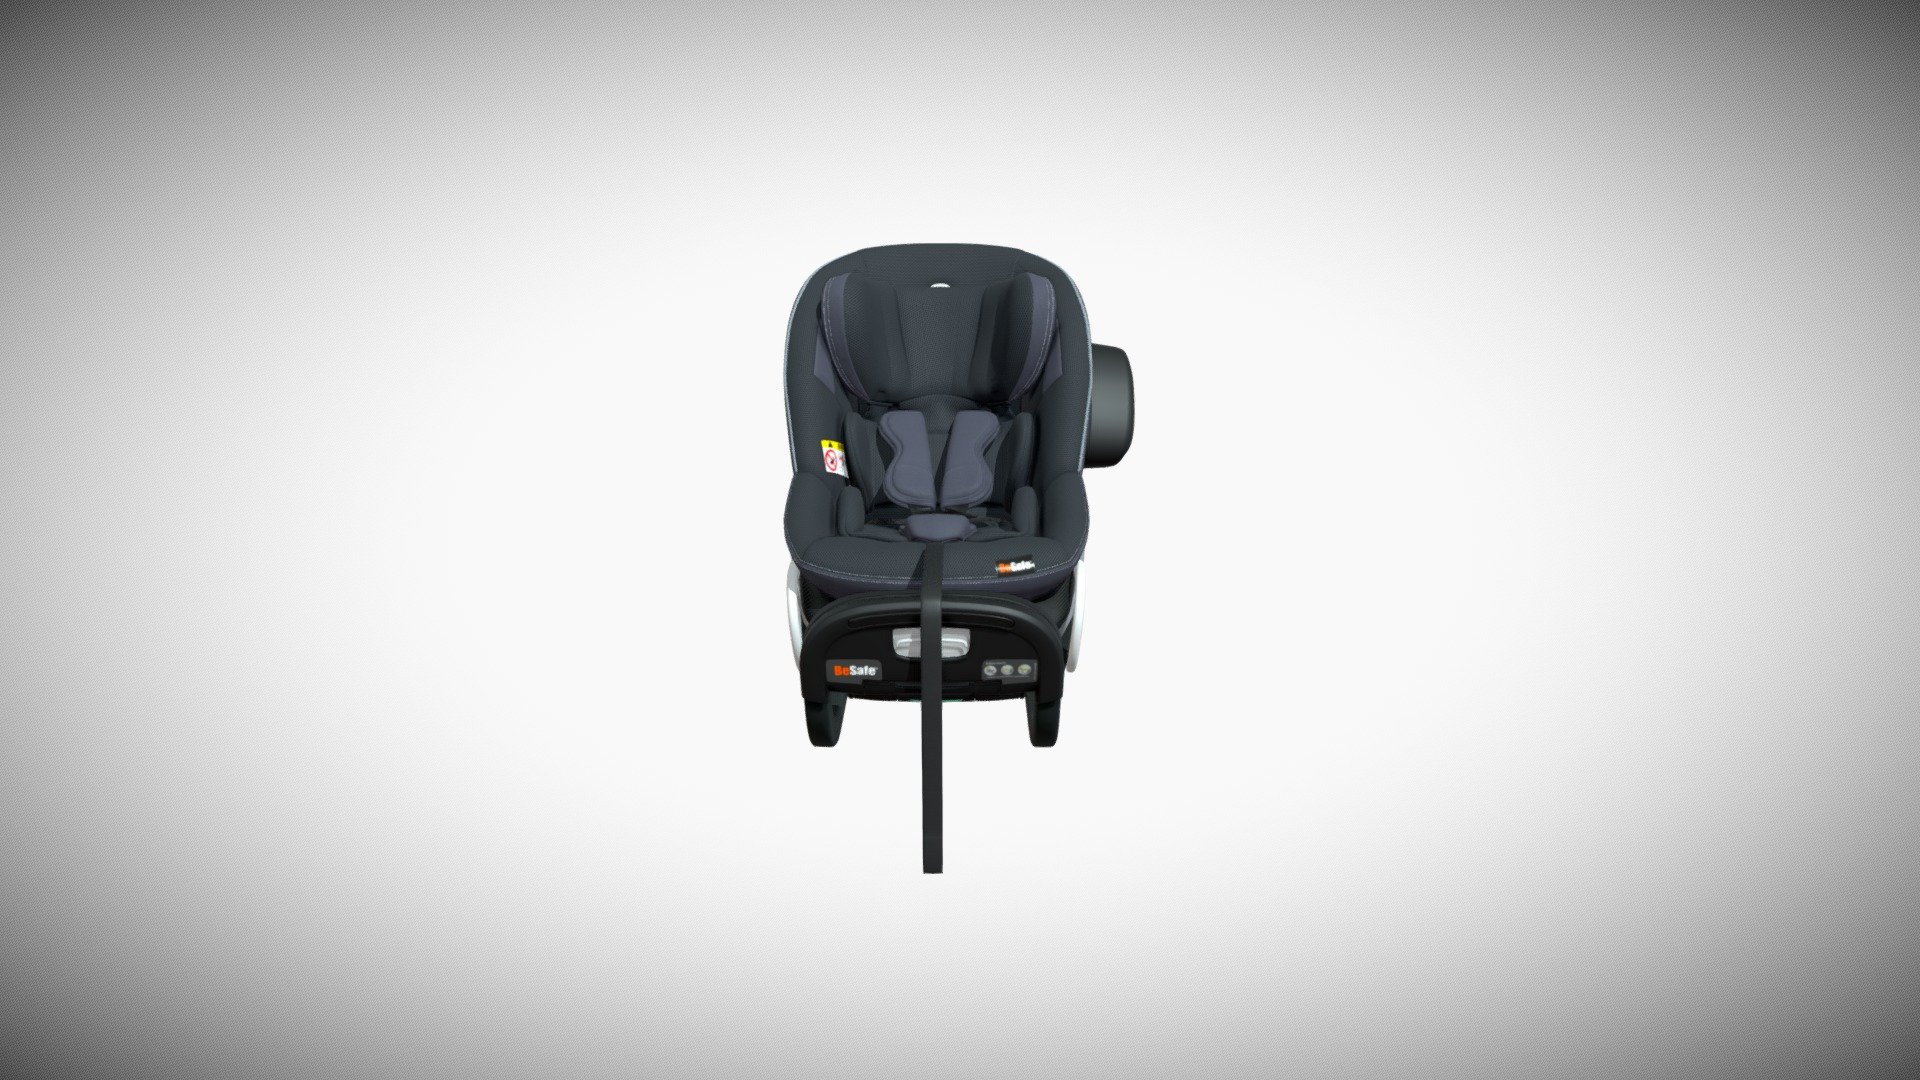 Besafe Baby Car Seat Anthracite Mesh - Besafe Baby Car Seat Anthracite Mesh - 3D model by 2softgames 3d model